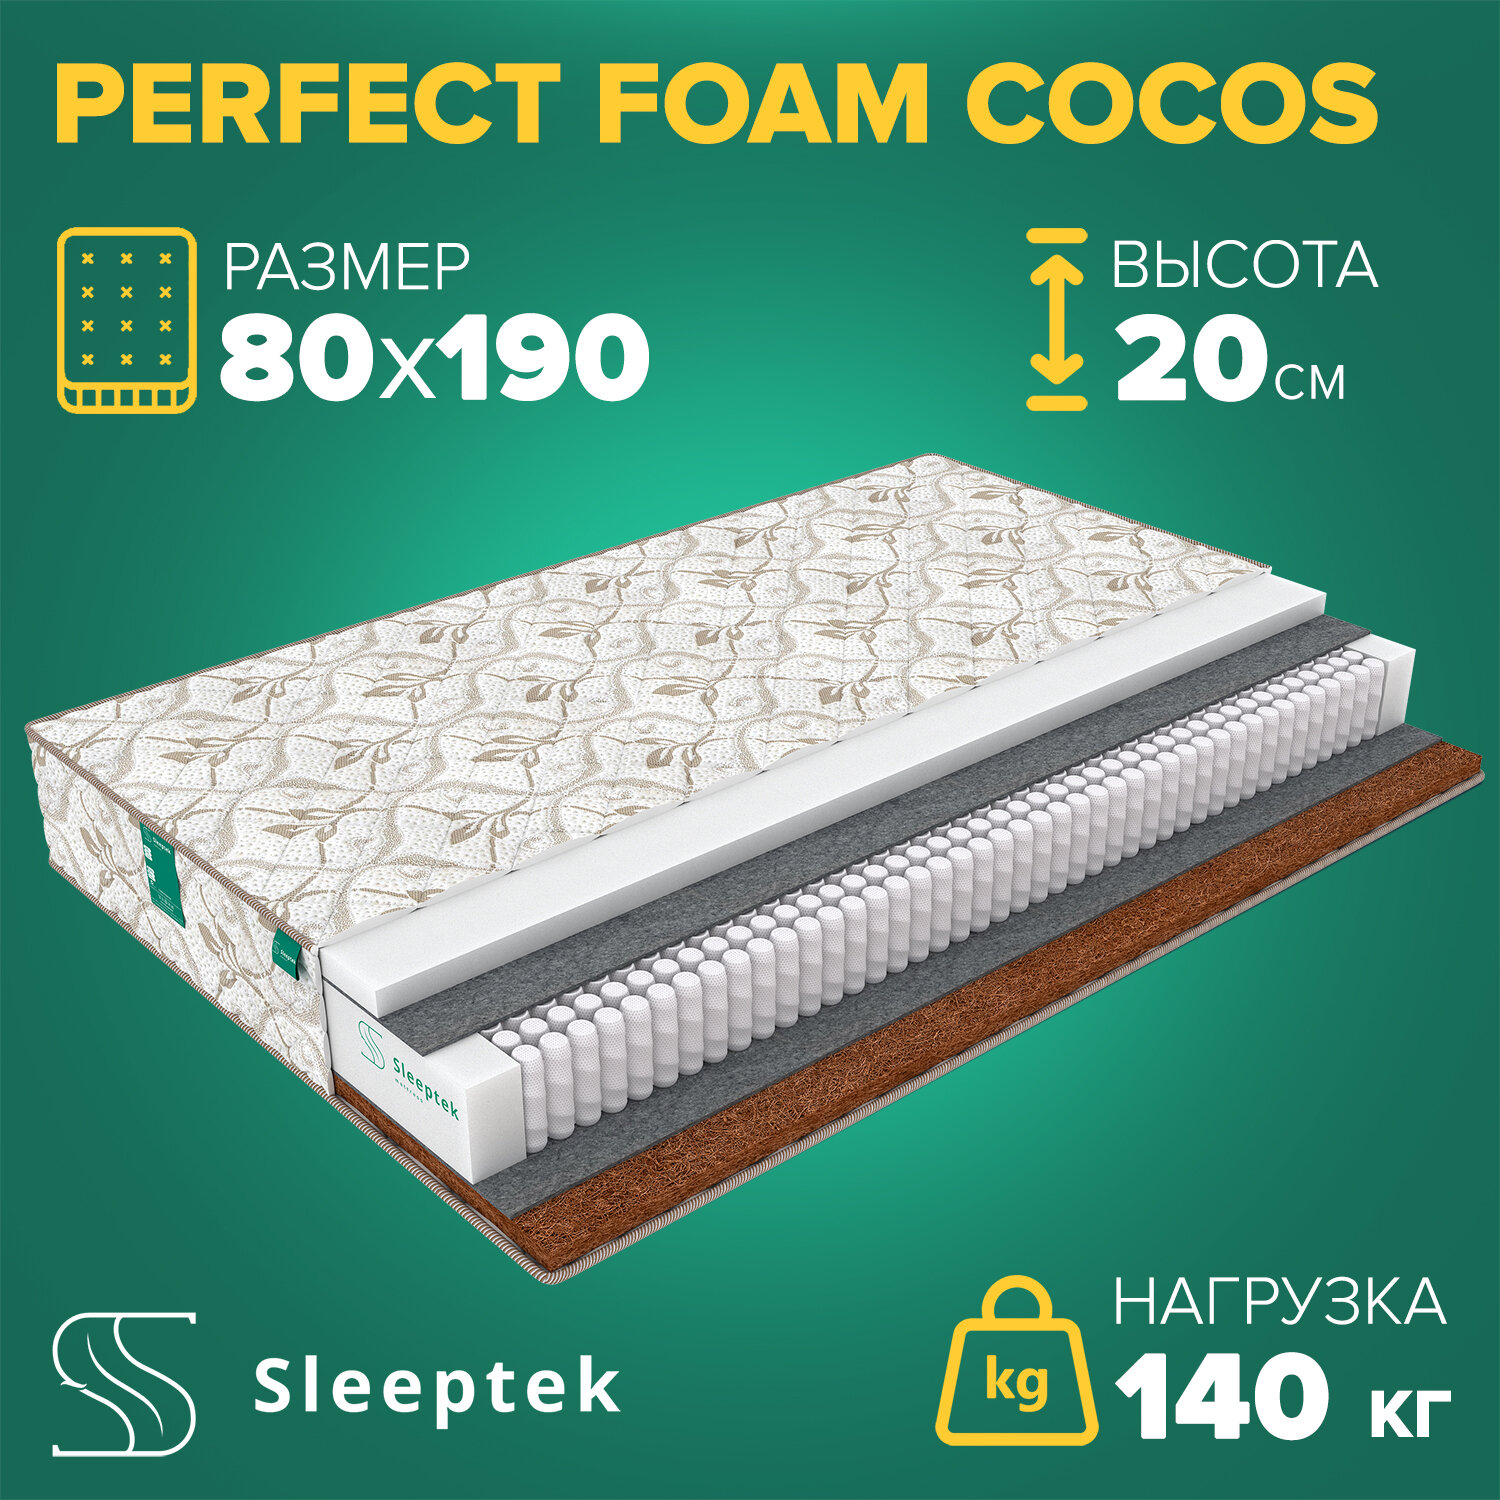  Sleeptek Perfect Foam Cocos 80190